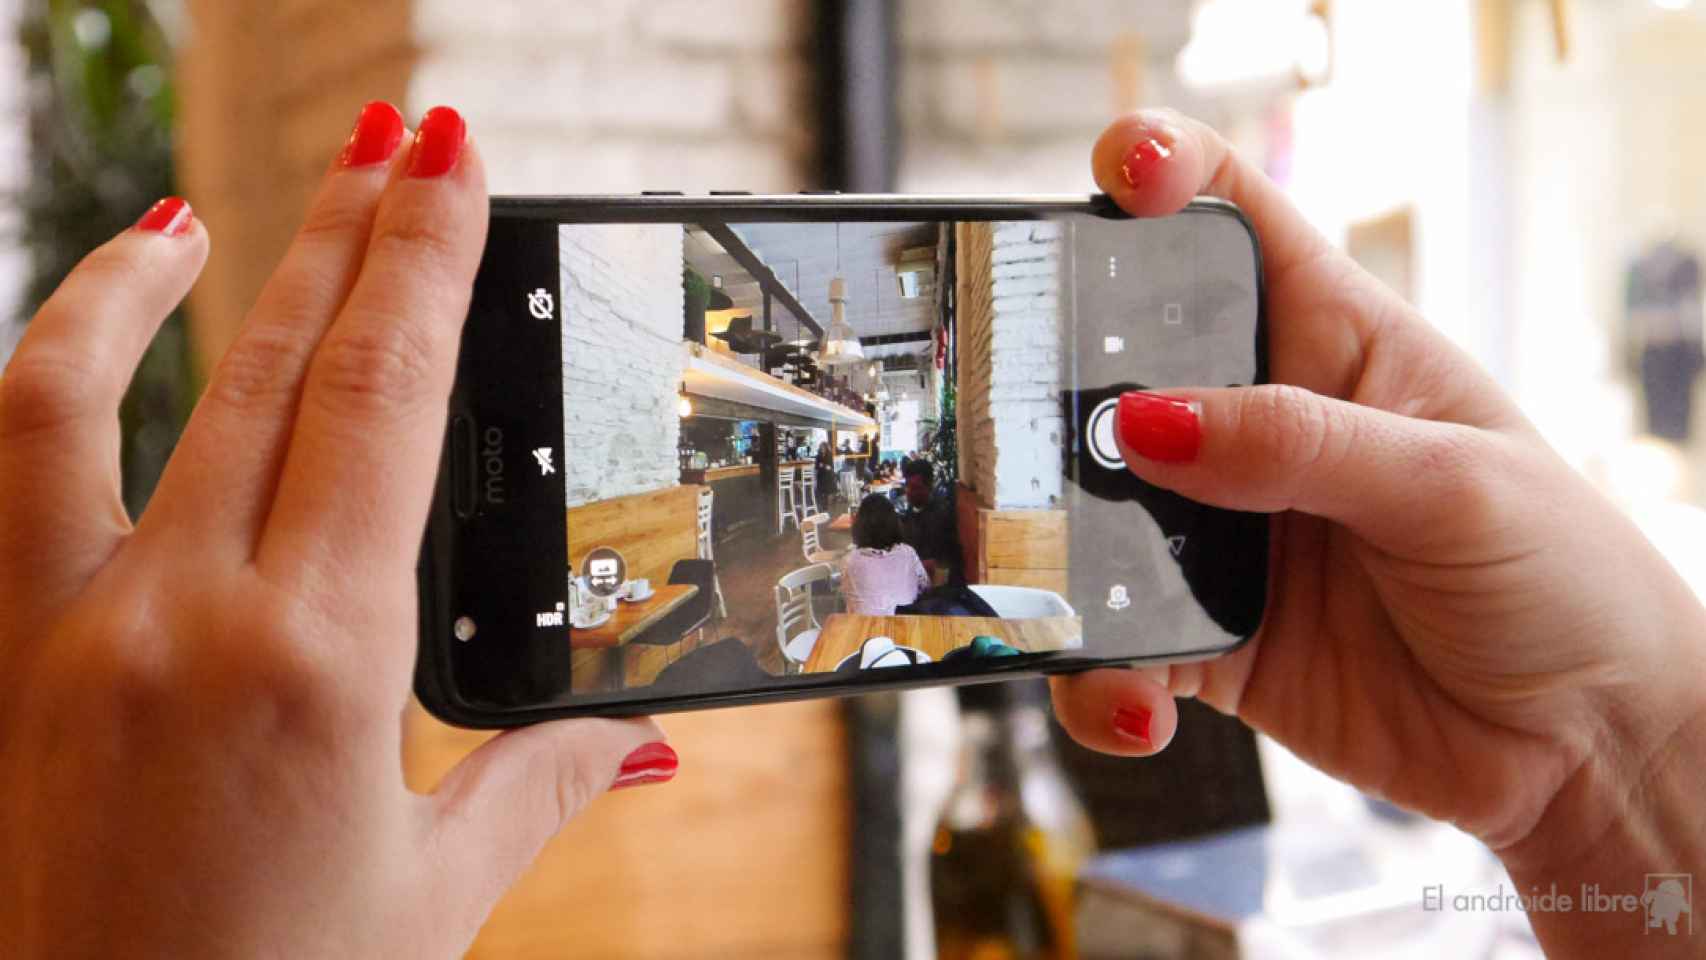 La cámara de los Motorola se actualiza con realidad aumentada y más